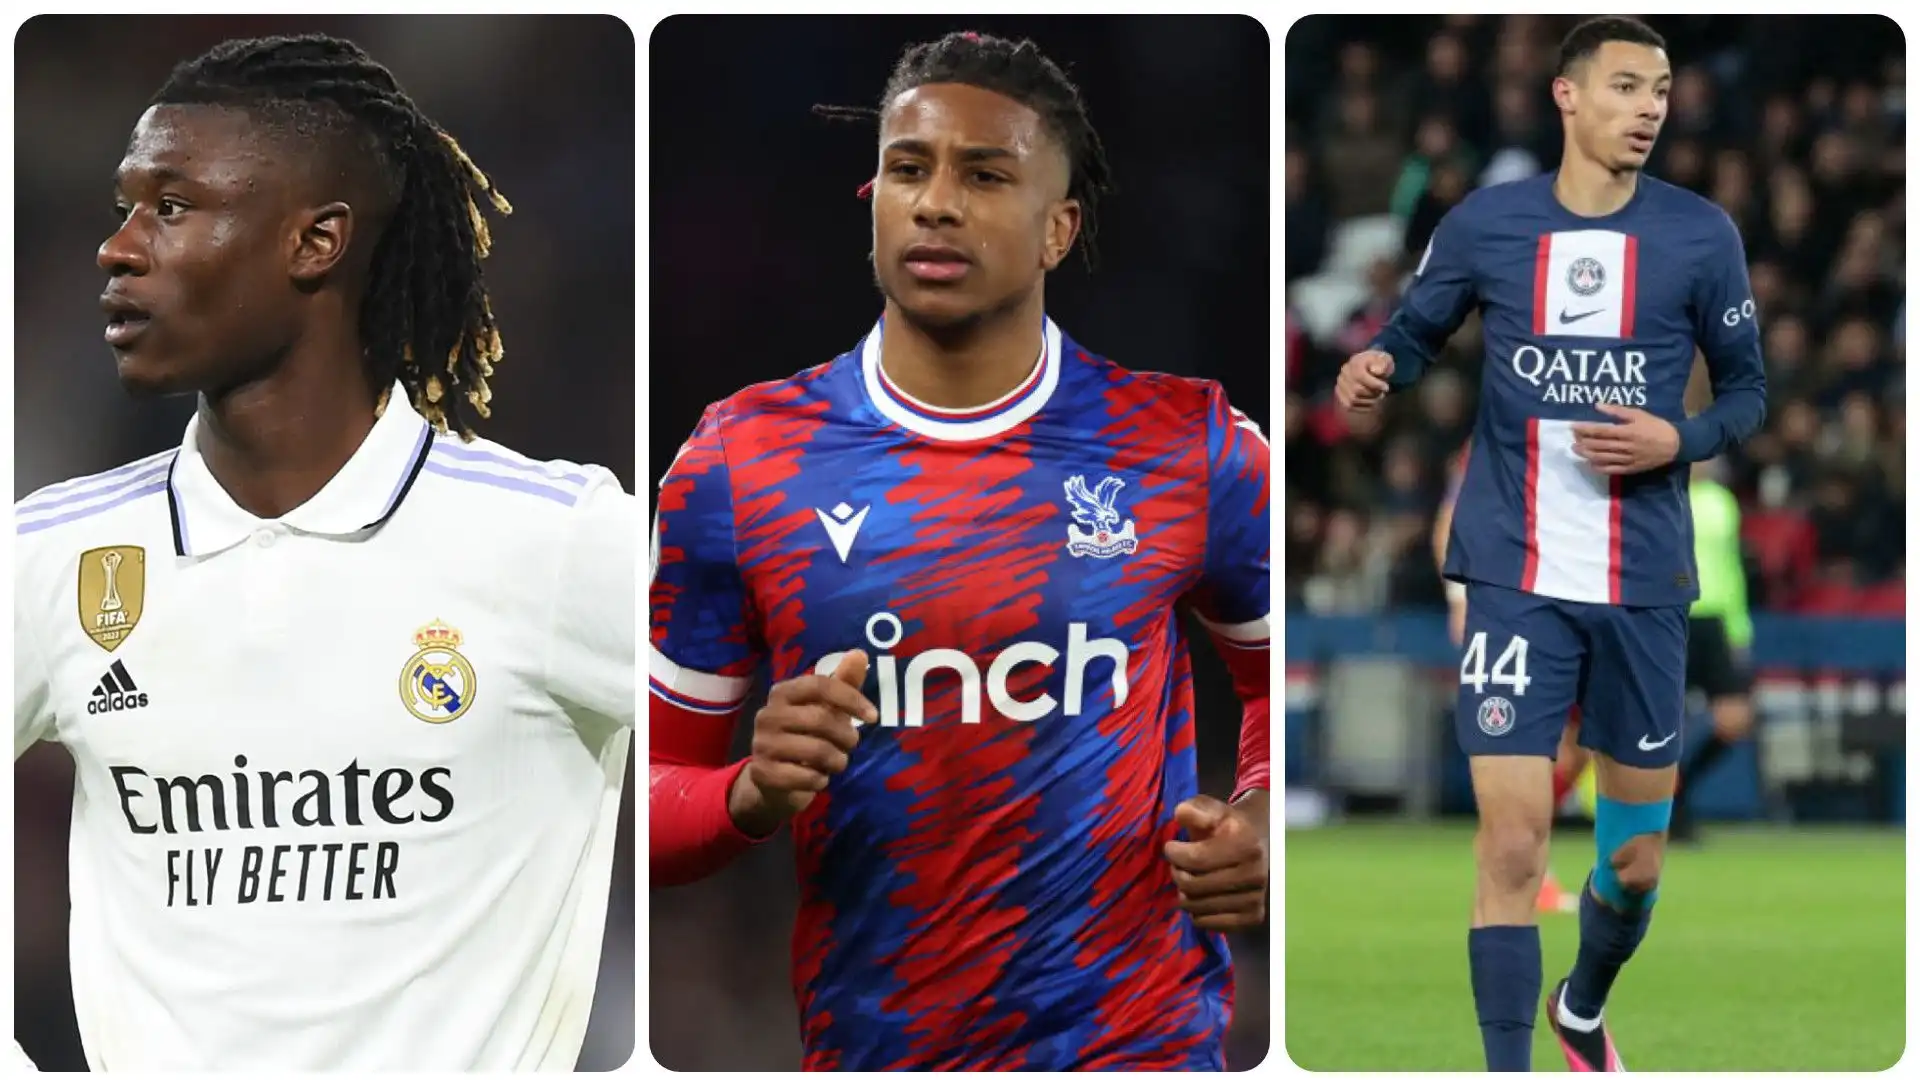 I 10 giovani calciatori francesi più preziosi: classifica in foto. Fonte: Transfermarkt